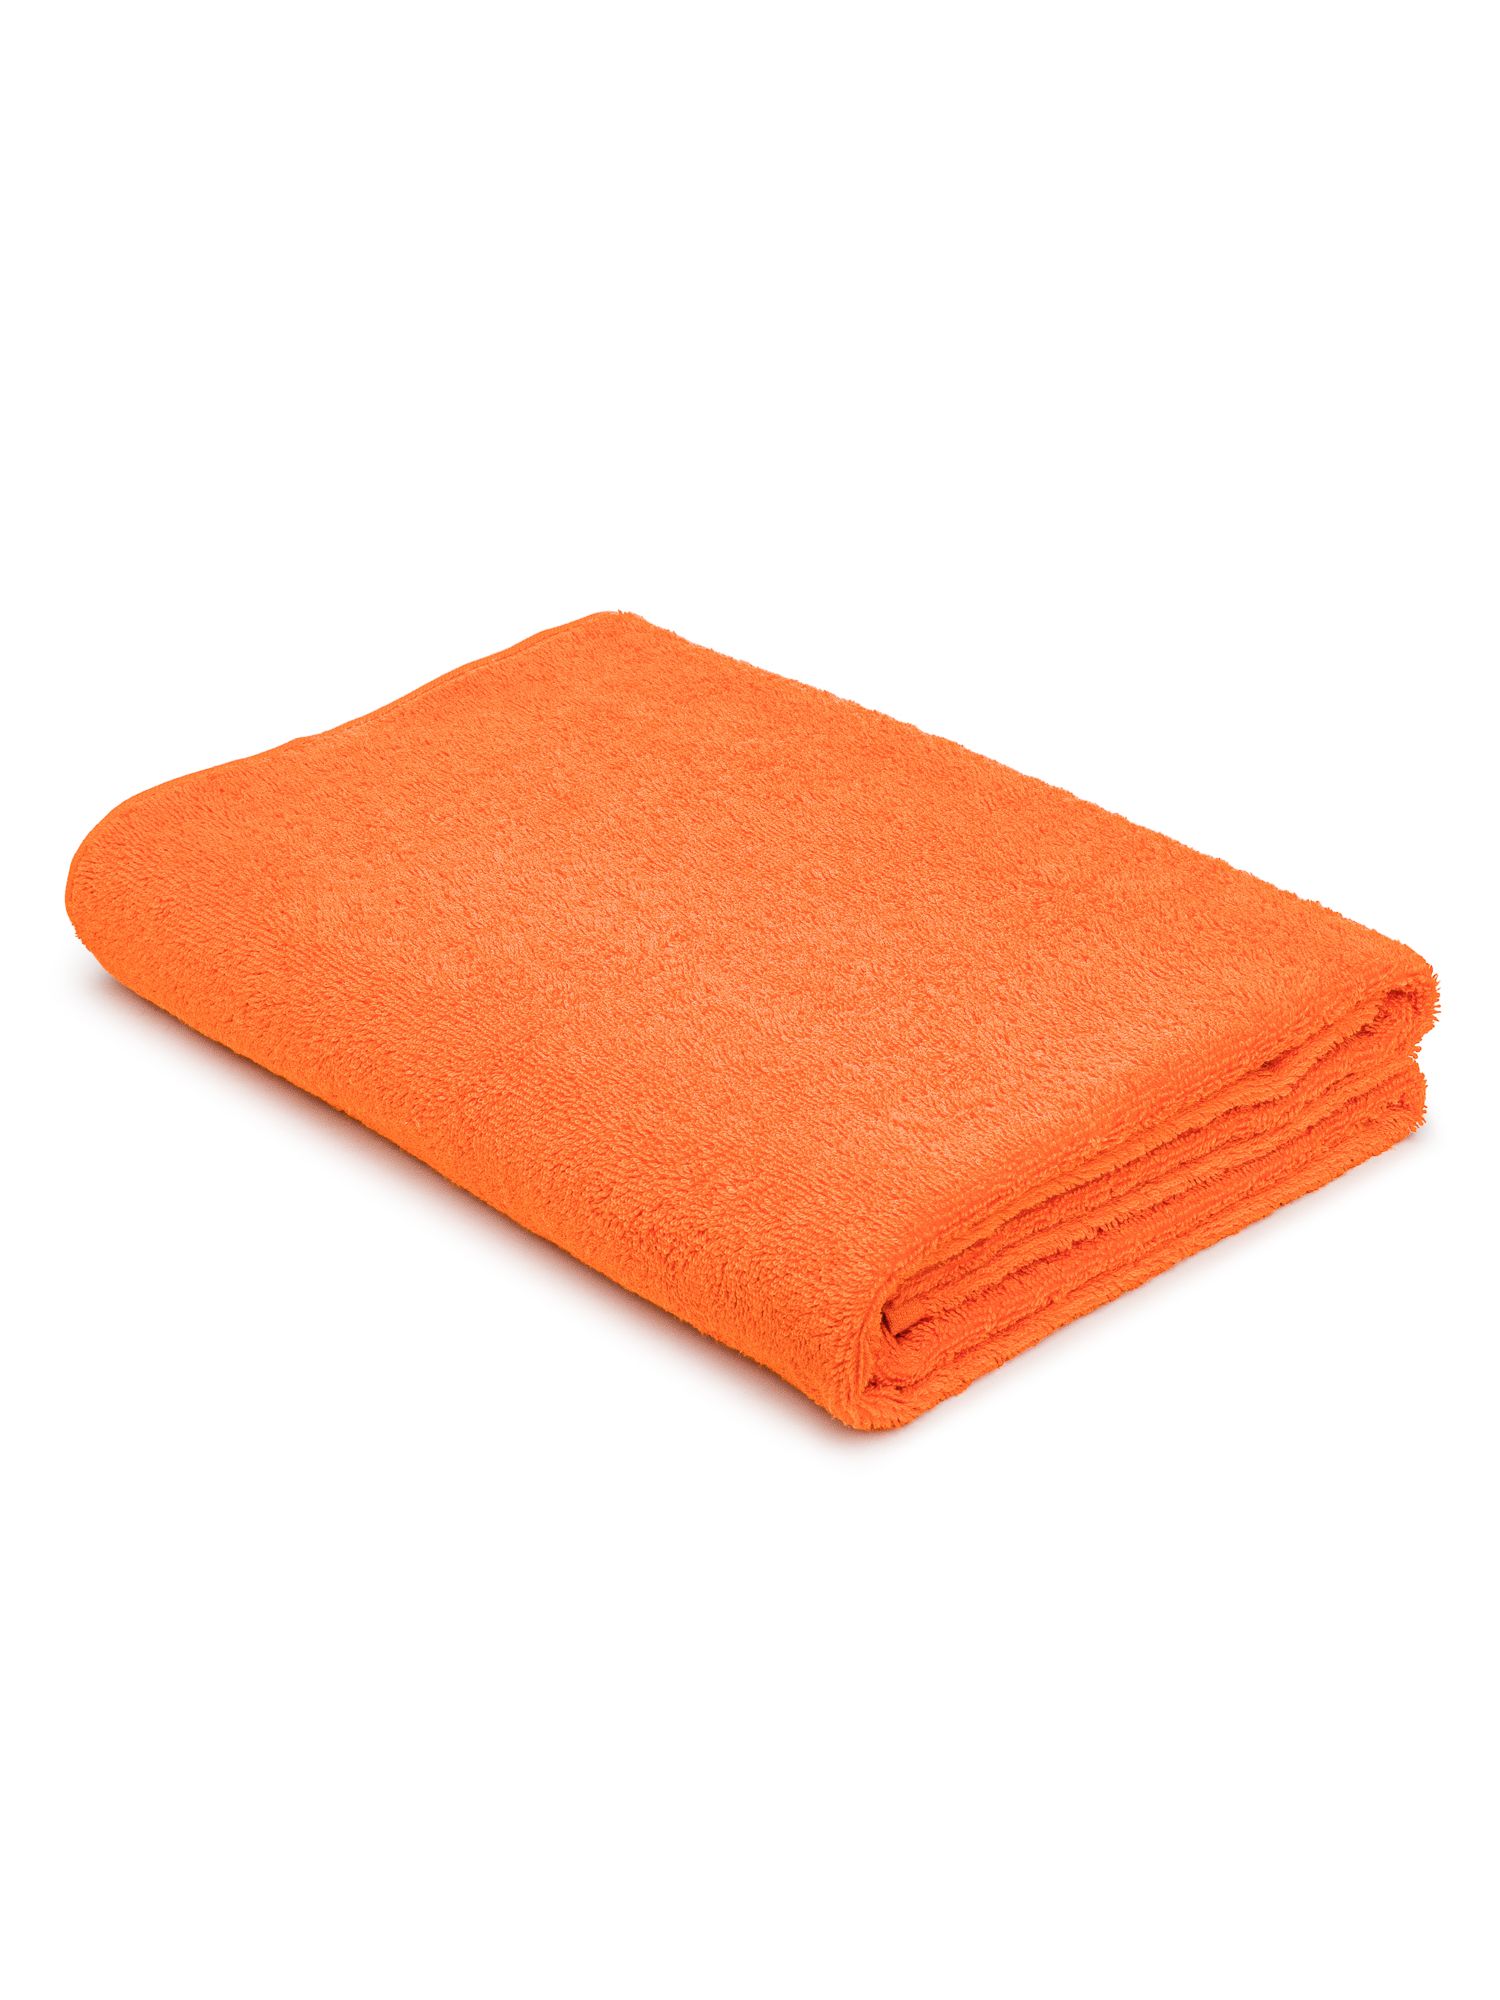 Махровое полотенце 70х140 банное TCStyle оранжевого цвета 1 шт. 470 гр/м2